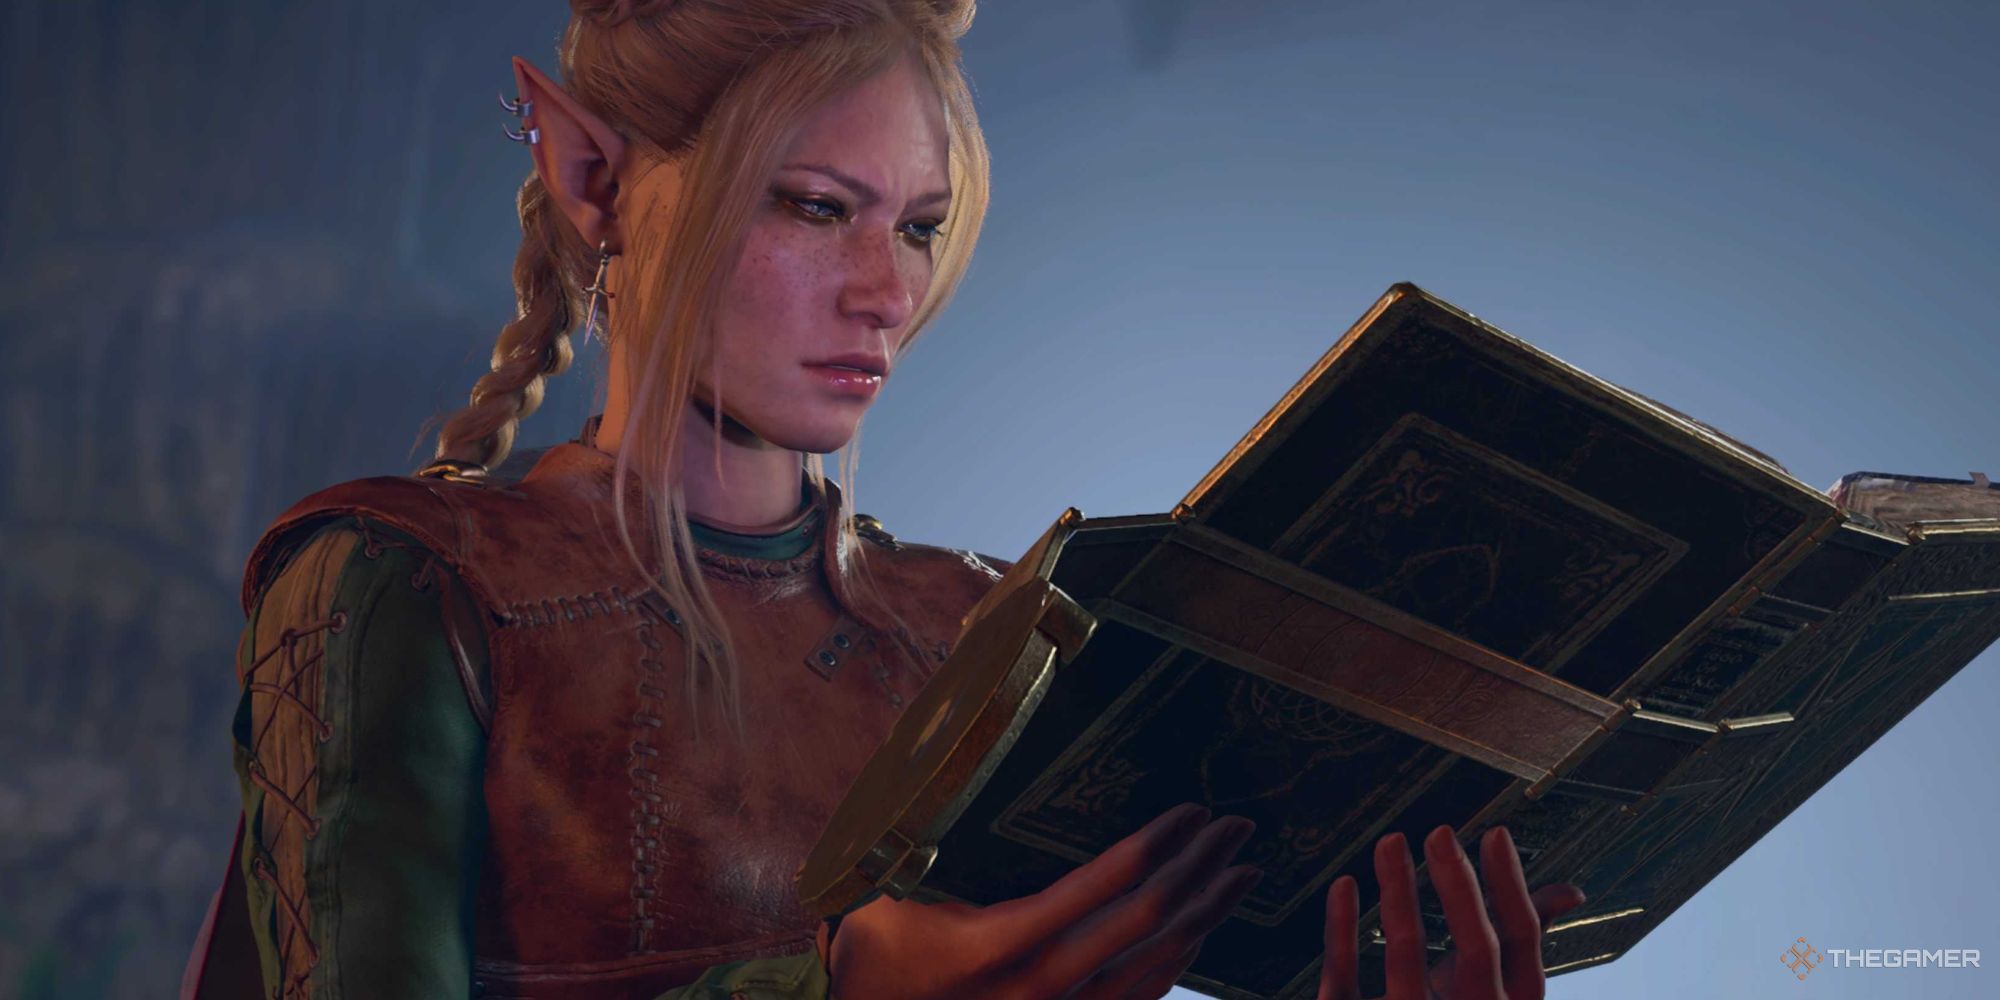 A blonde wood elf in Baldur's Gate 3, reading a book